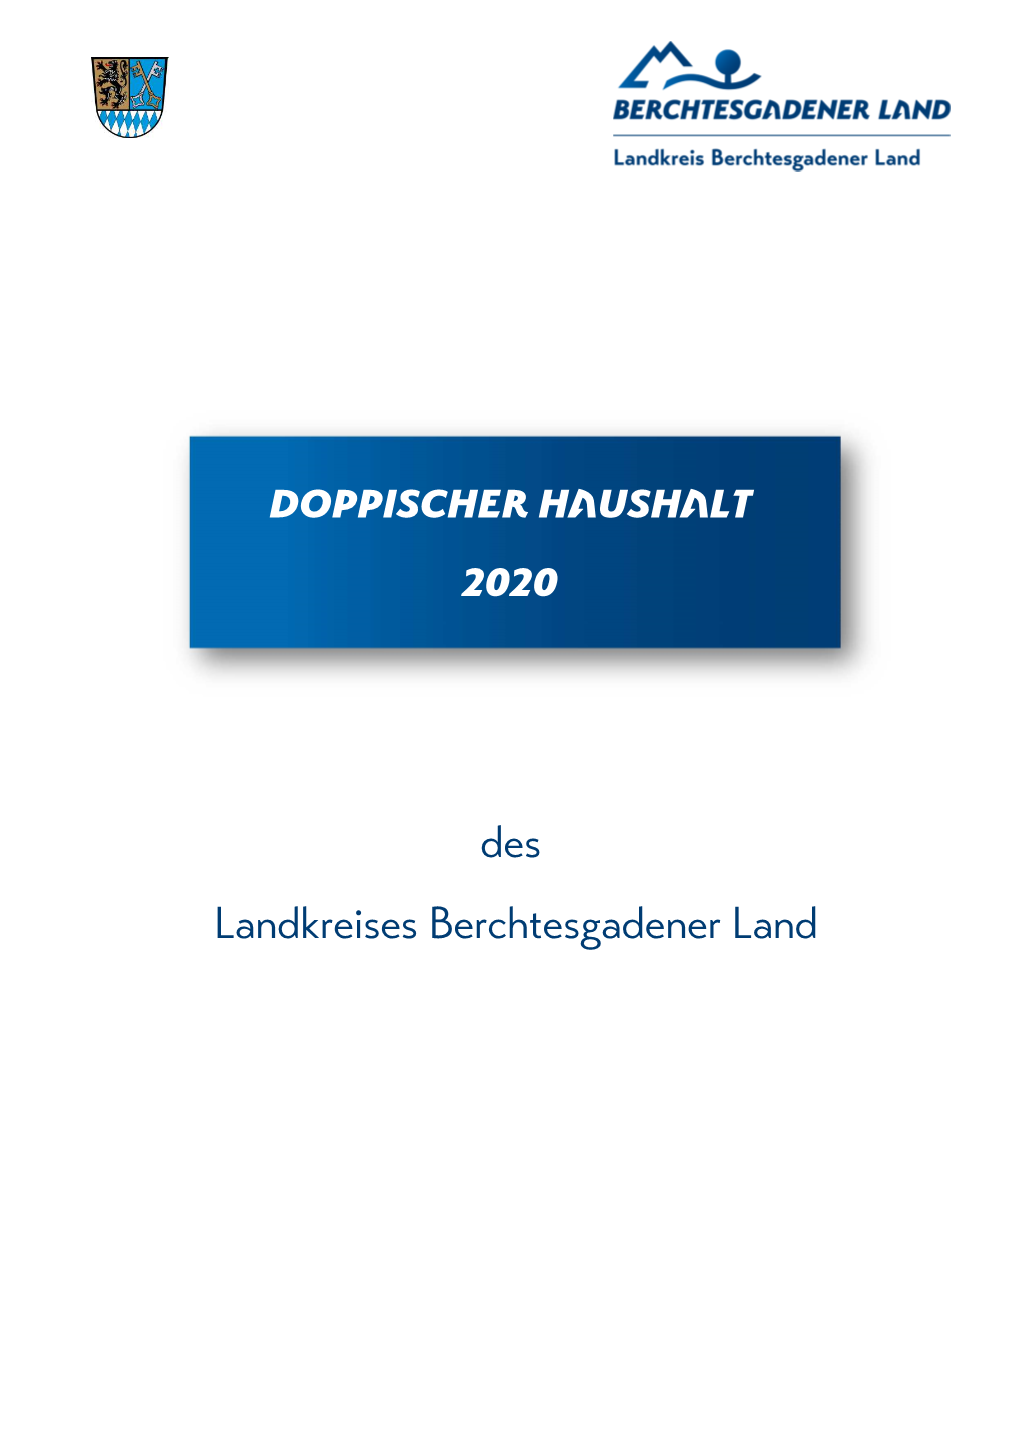 Doppischer Haushalt 2020 Des Landkreises Berchtesgadener Land